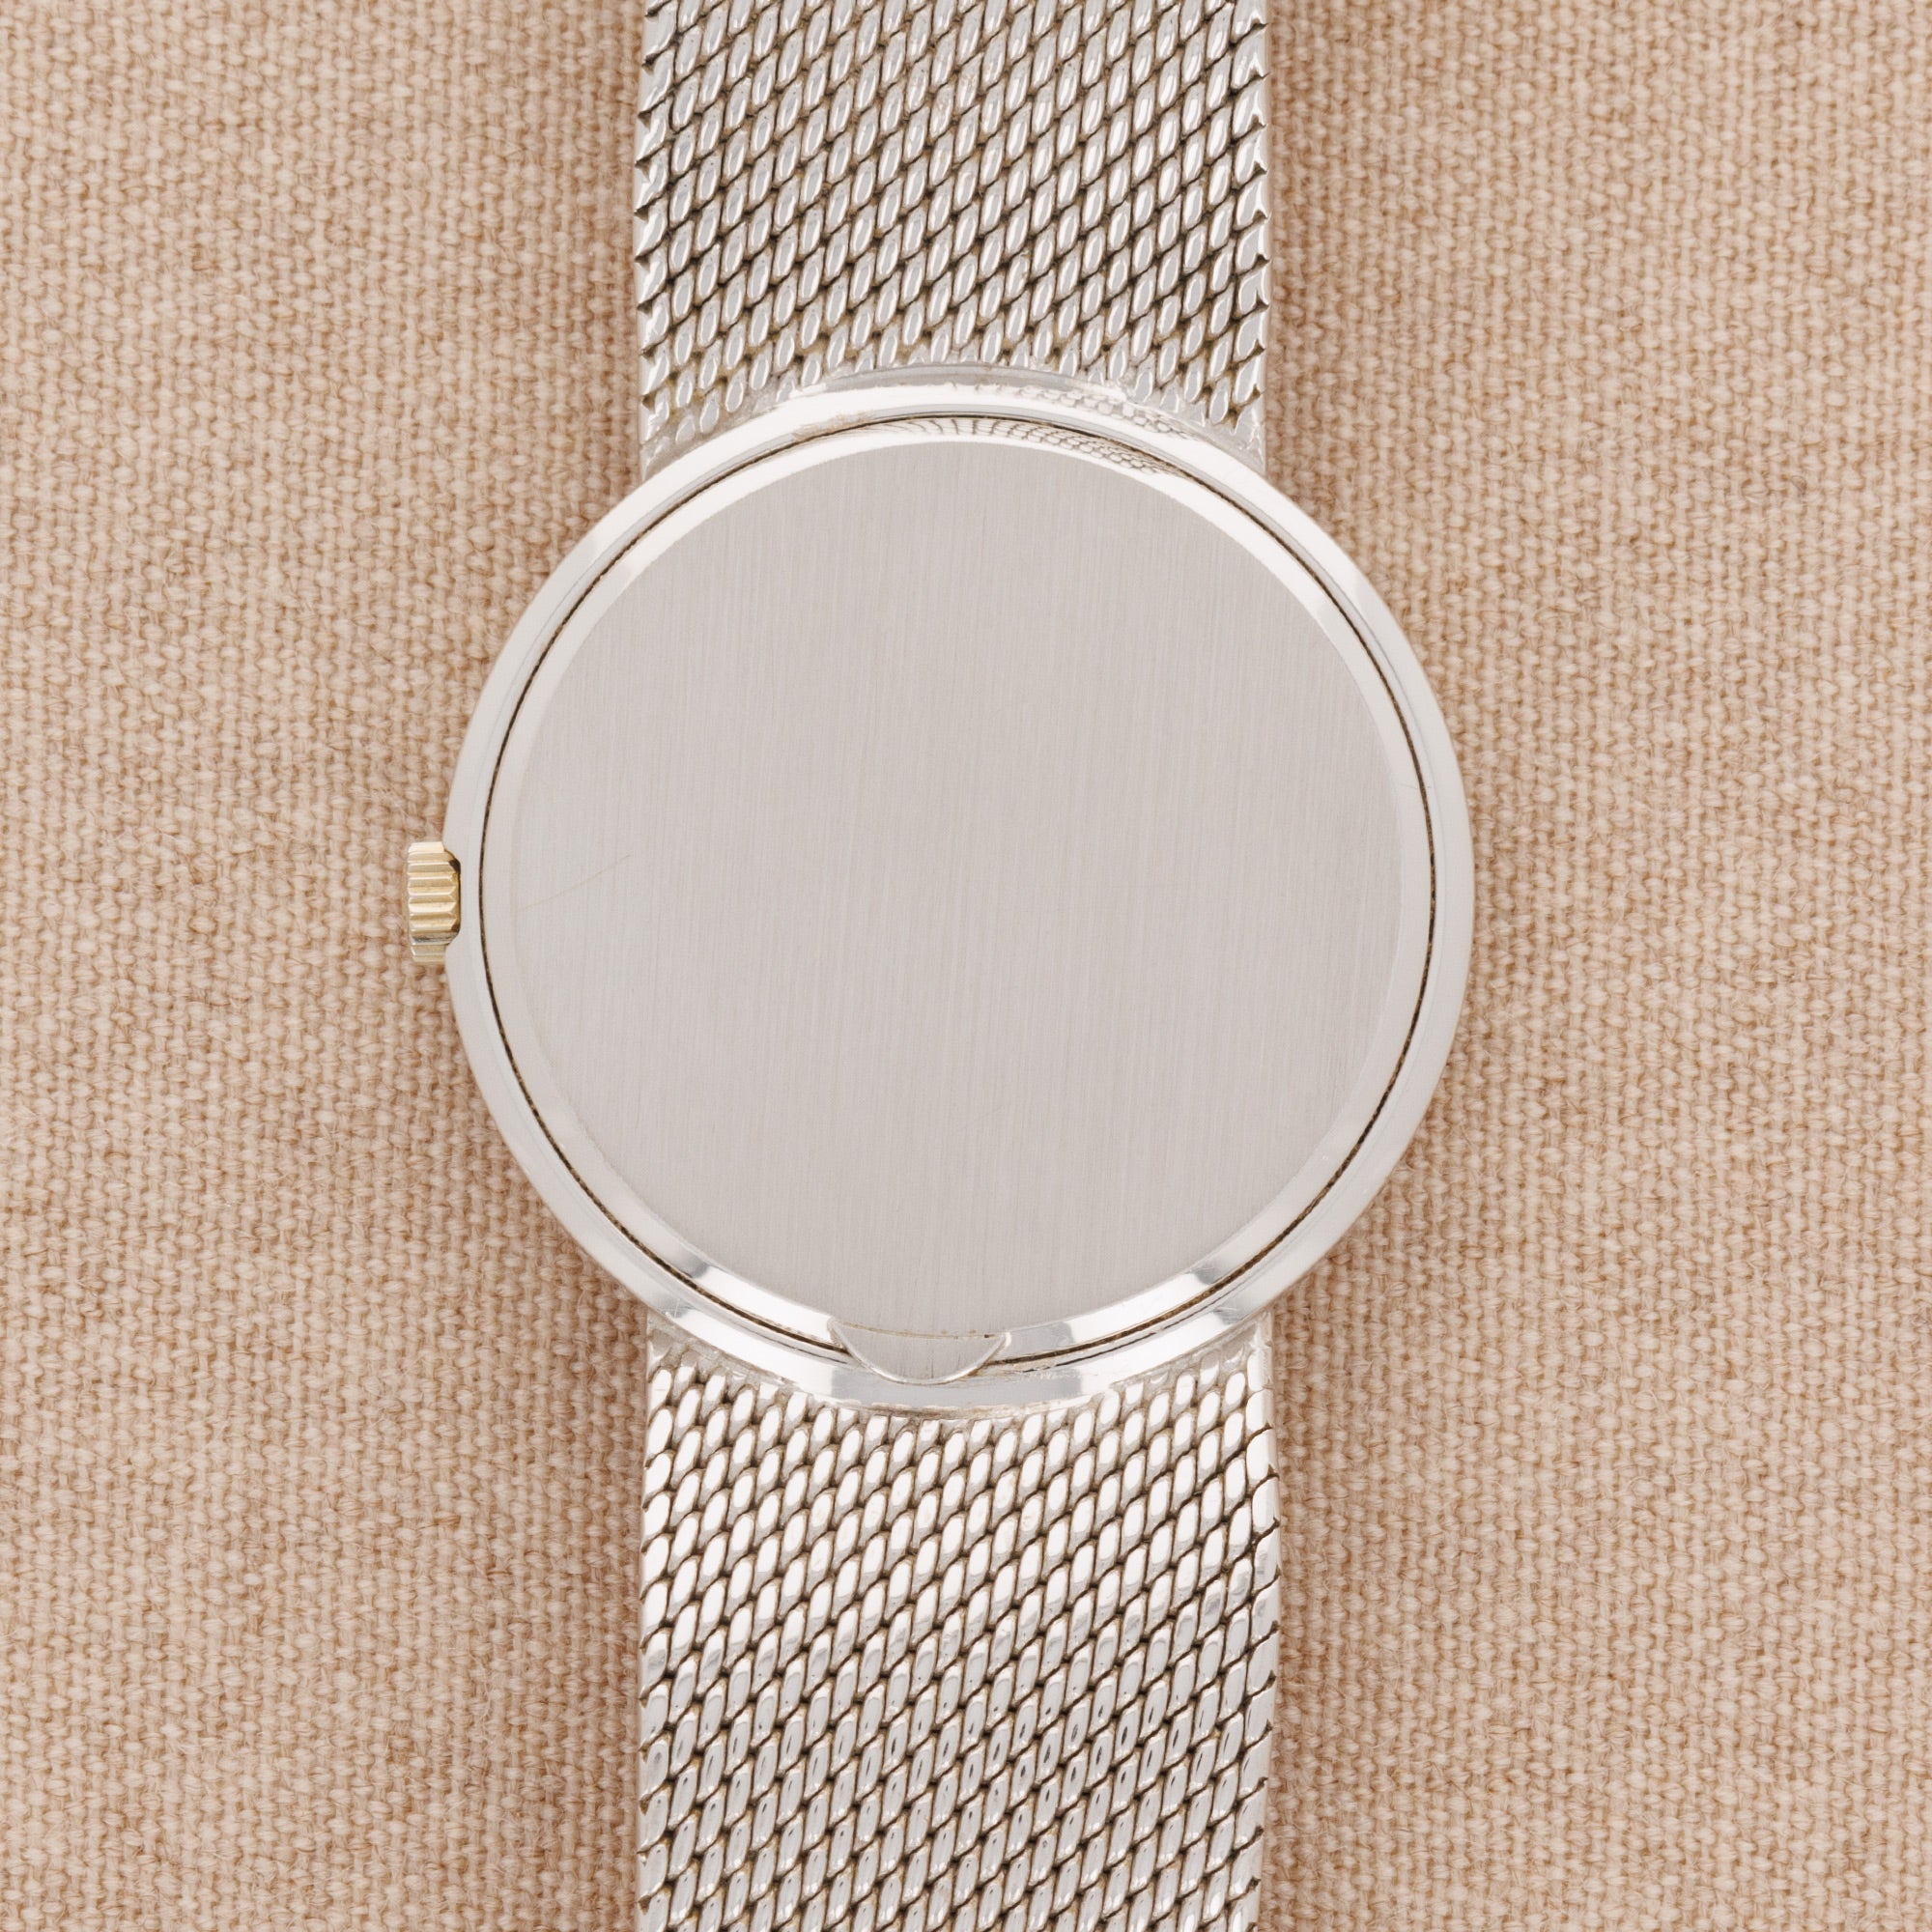 Patek Philippe - Patek Philippe White Gold Calatrava Ref. 3601 - The Keystone Watches